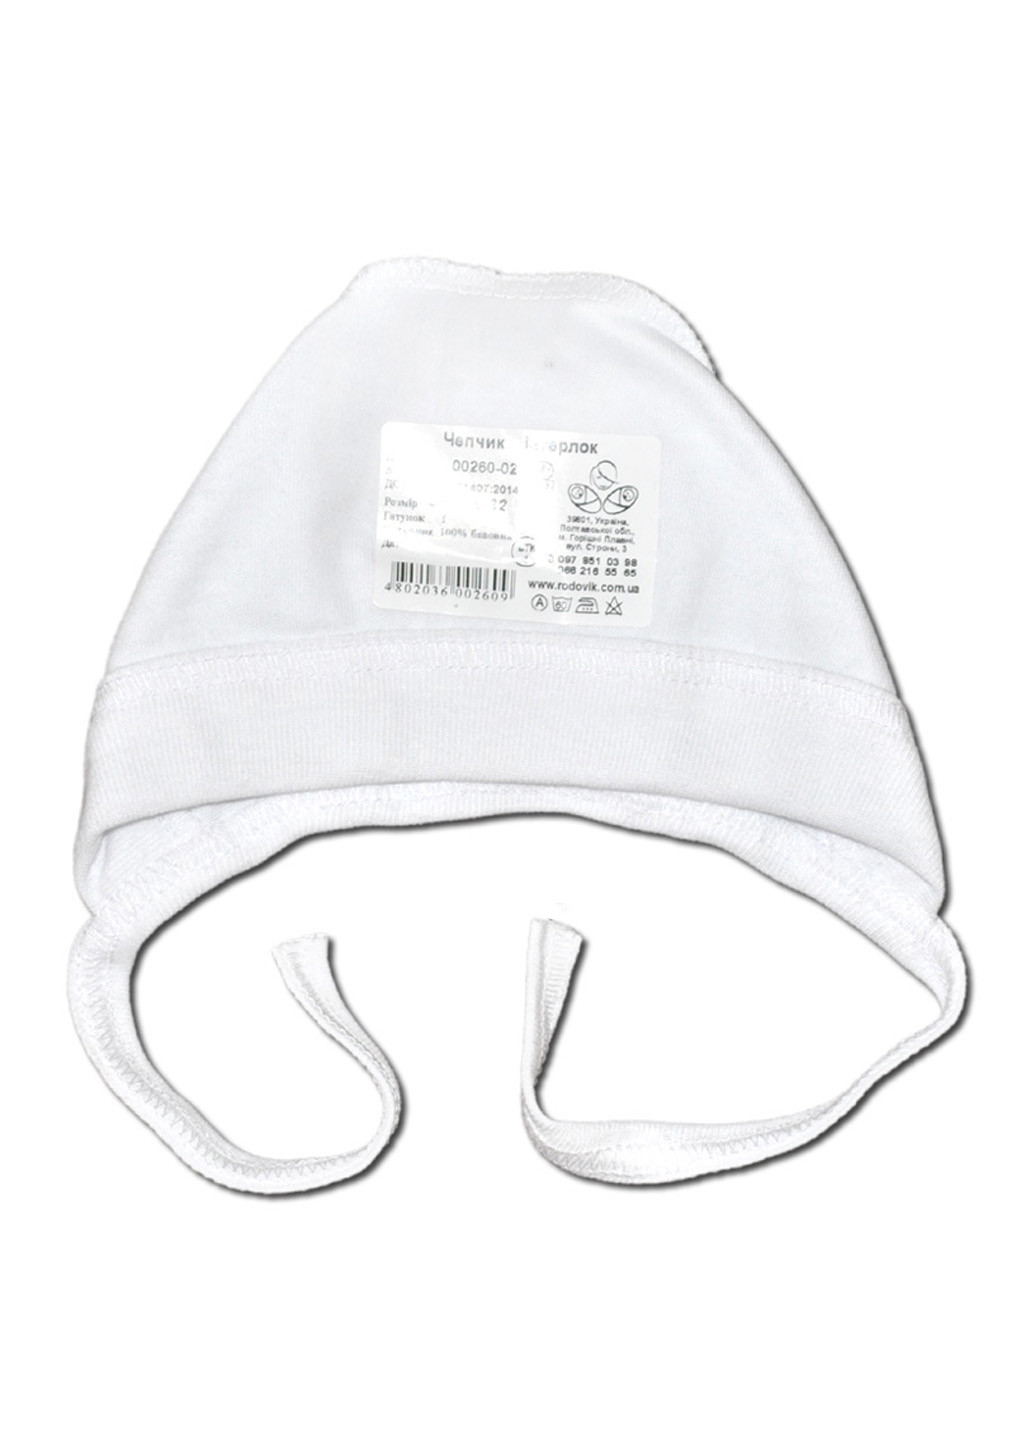 Белый демисезонный комплект одежды для малыша №5 (4 предмета) тм коллекция капитошка белый Родовик комплект БД-05